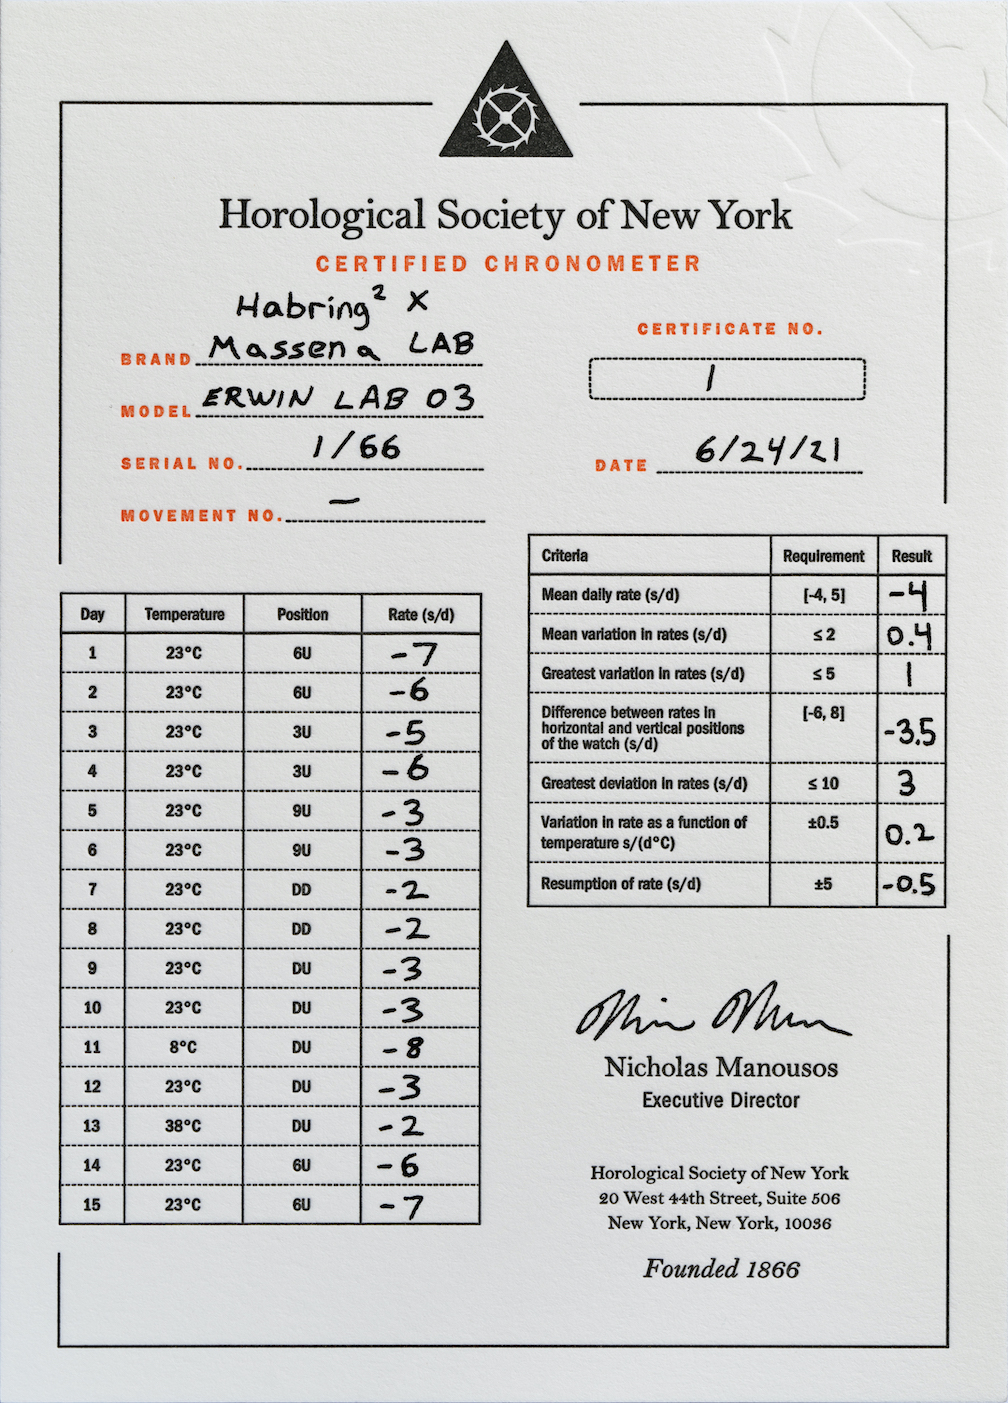 HSNY Chronometer Certification